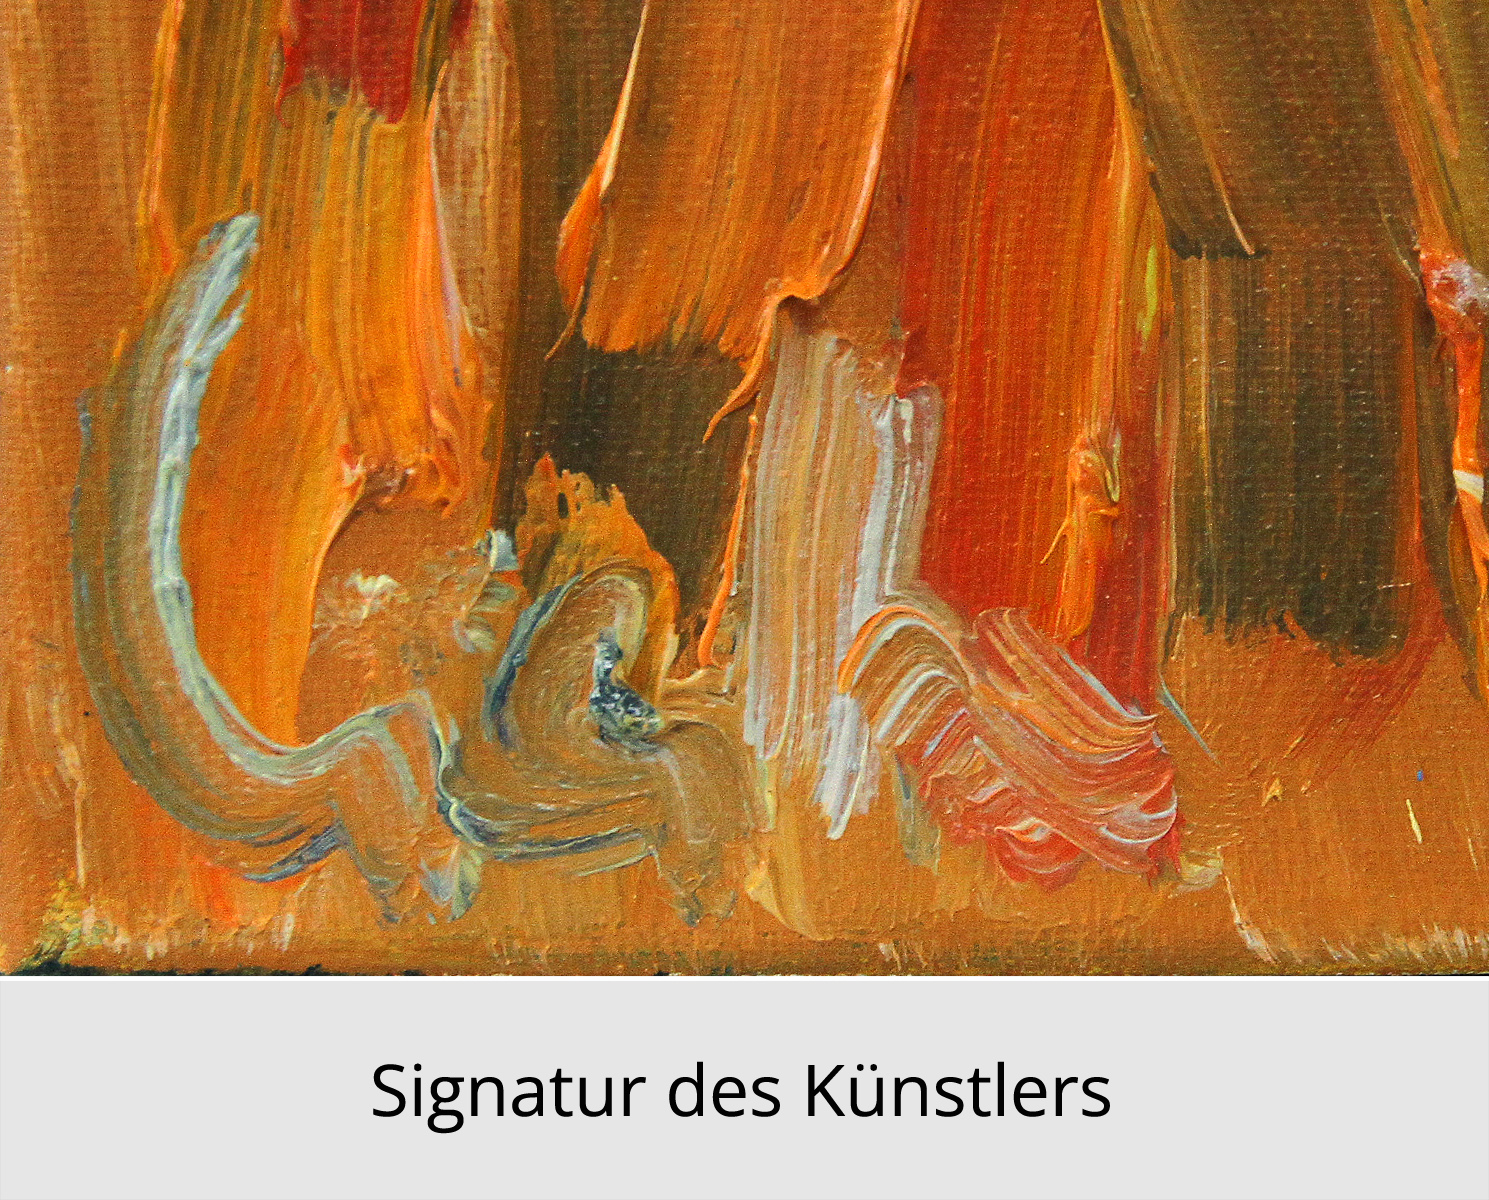 M. Cieśla: "Abstrakte Komposition, See", Original/Unikat, Expressionistisches Ölgemälde